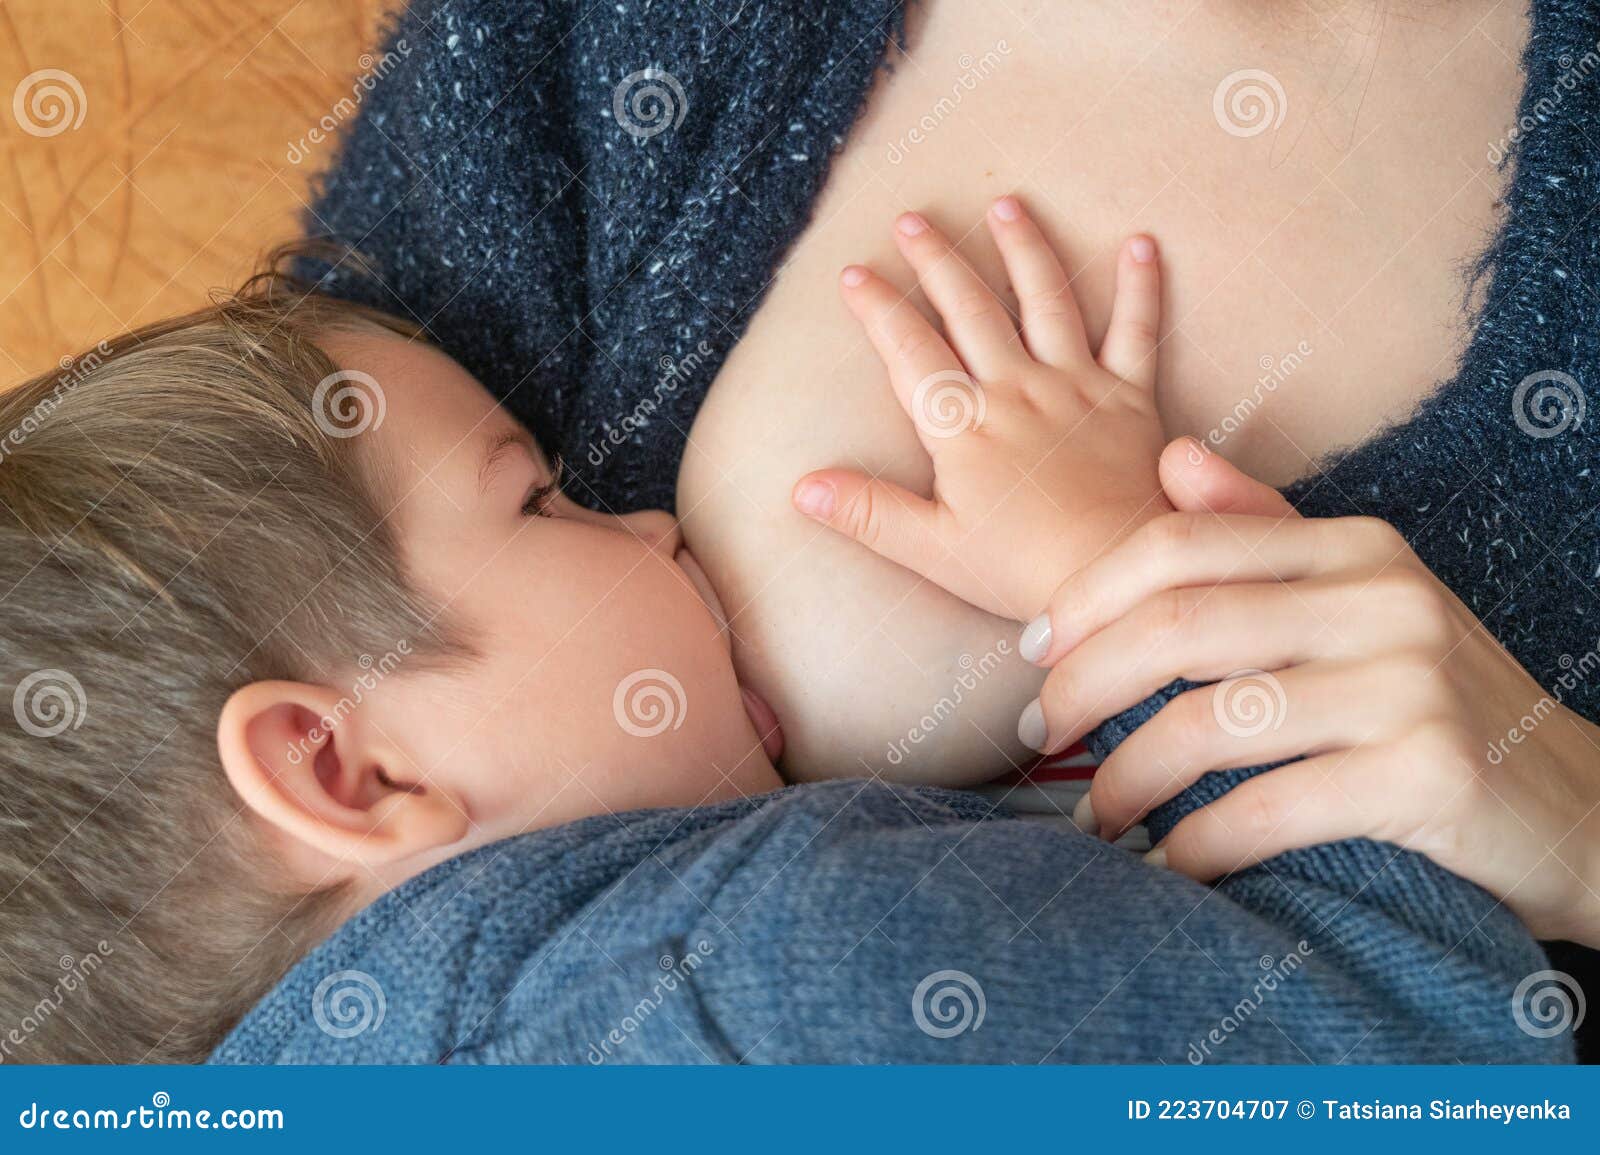 сын держит за грудь маму фото 72